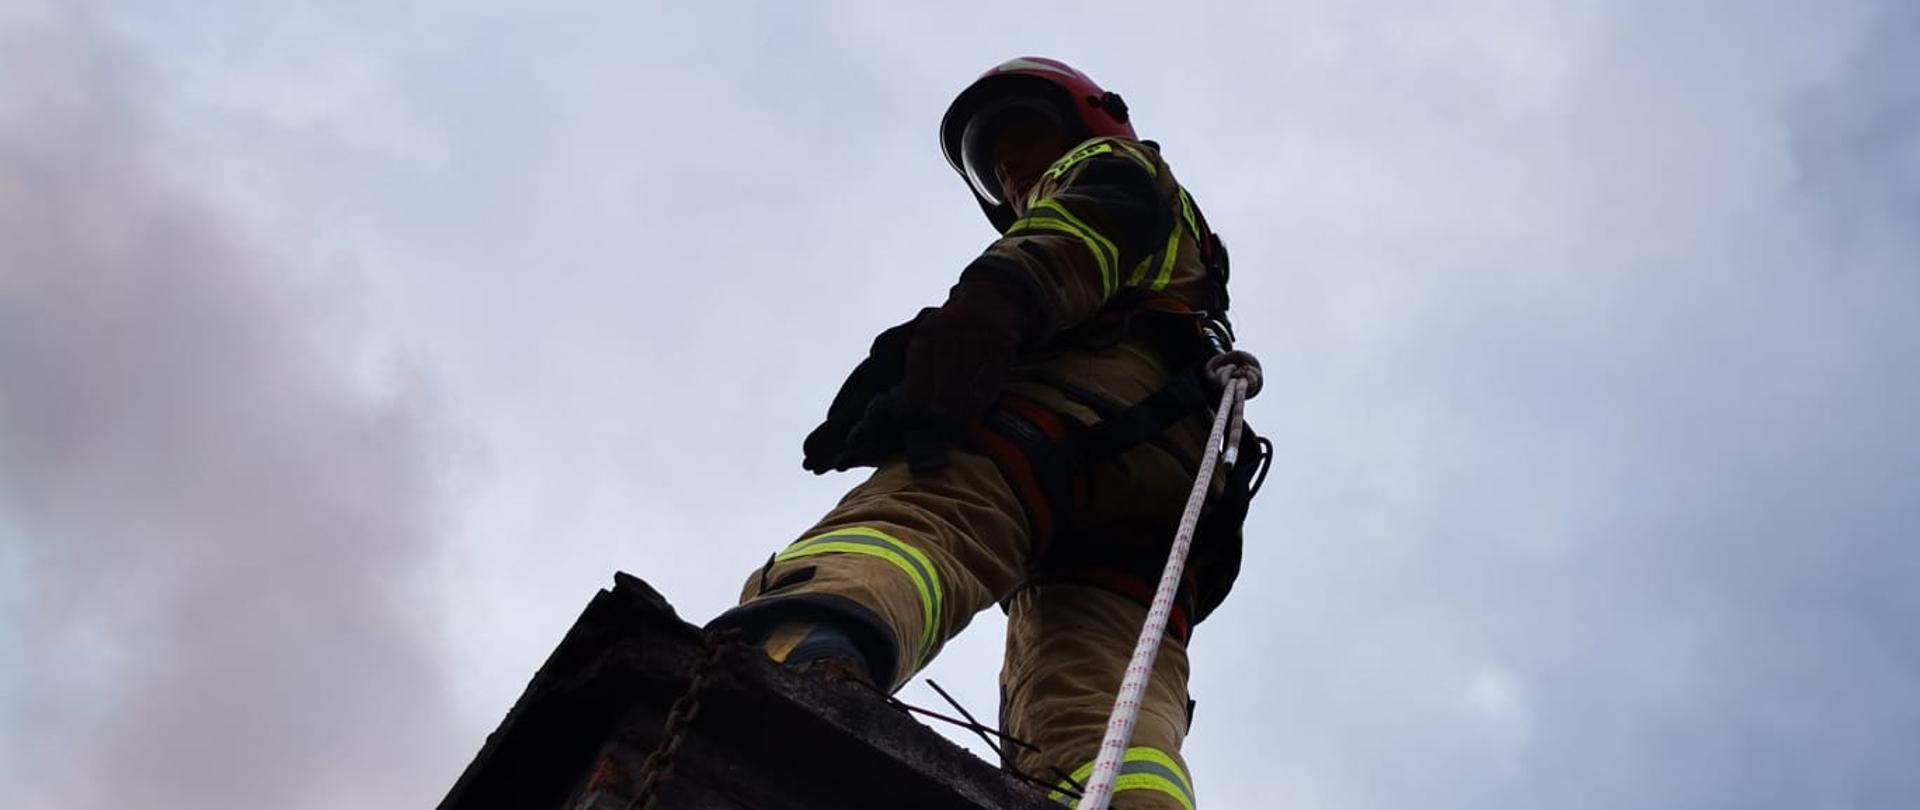 Strażak gasi pożar sadzy w kominie - stoi ba kominie zapięty linką